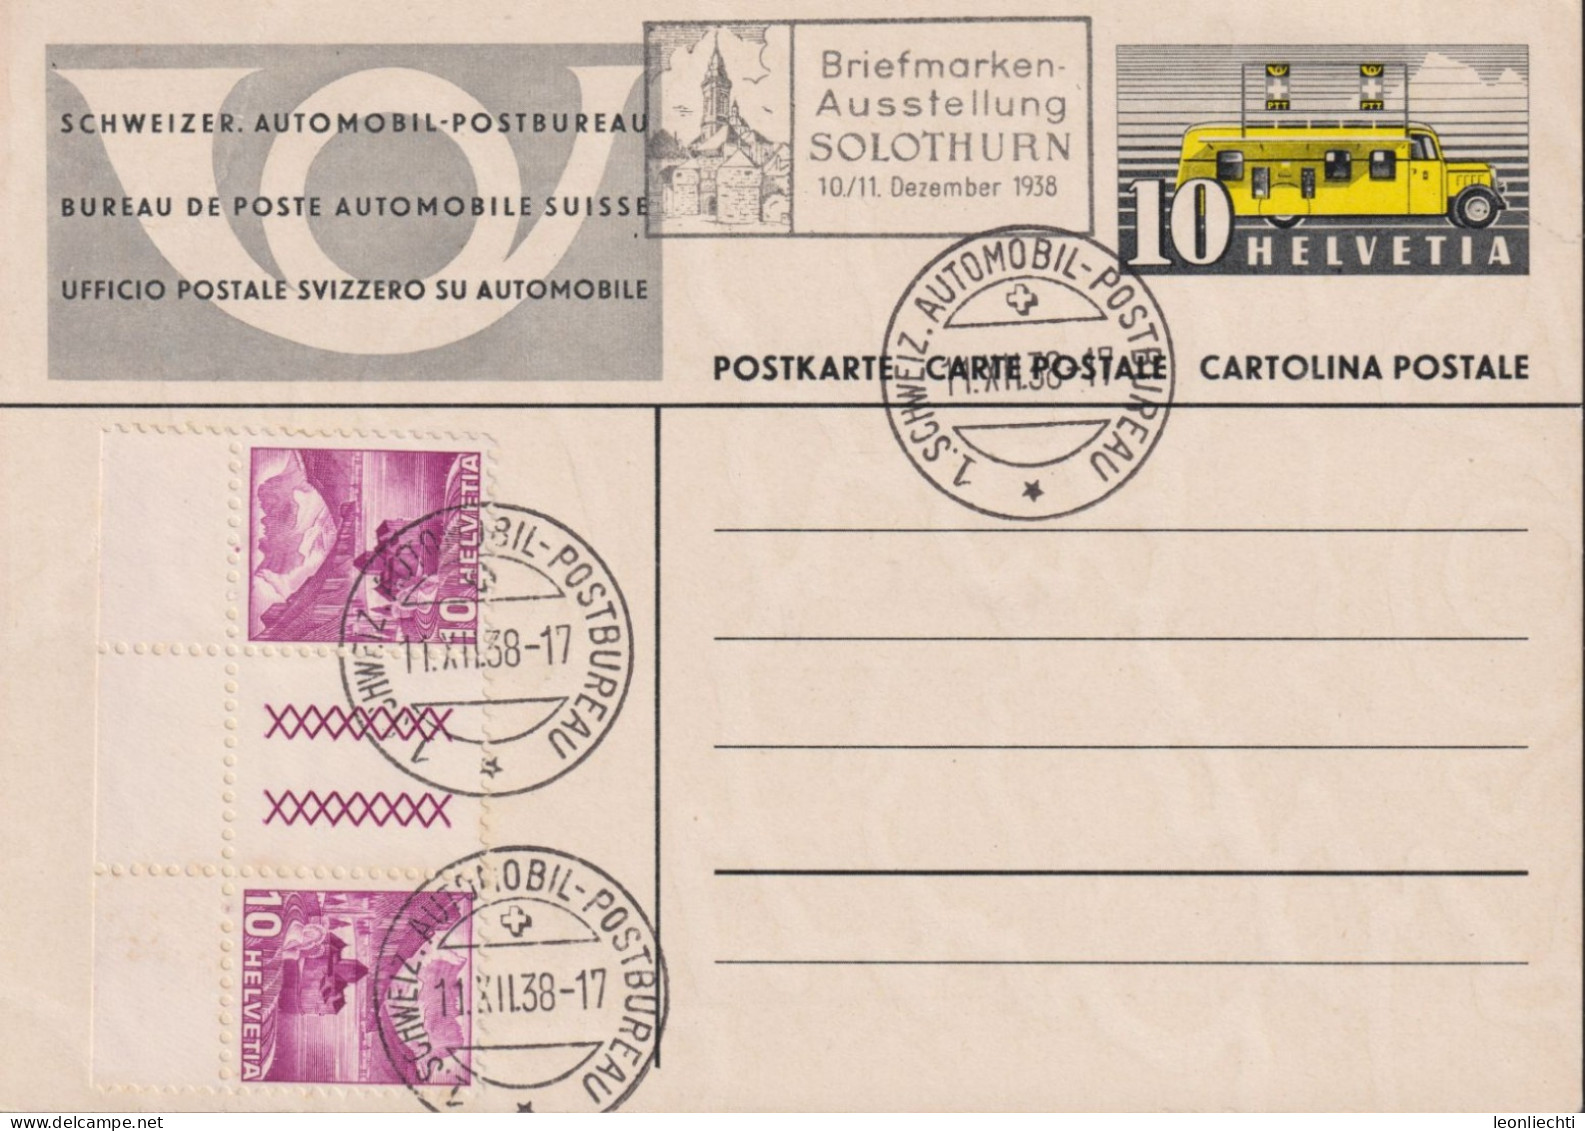 1937 Schweier Automobil Postbureau Zum:144b+ S51A, Postauto, Flagge: Briefmarken-Ausstellung SOLOTHURN 1938 - Stamped Stationery